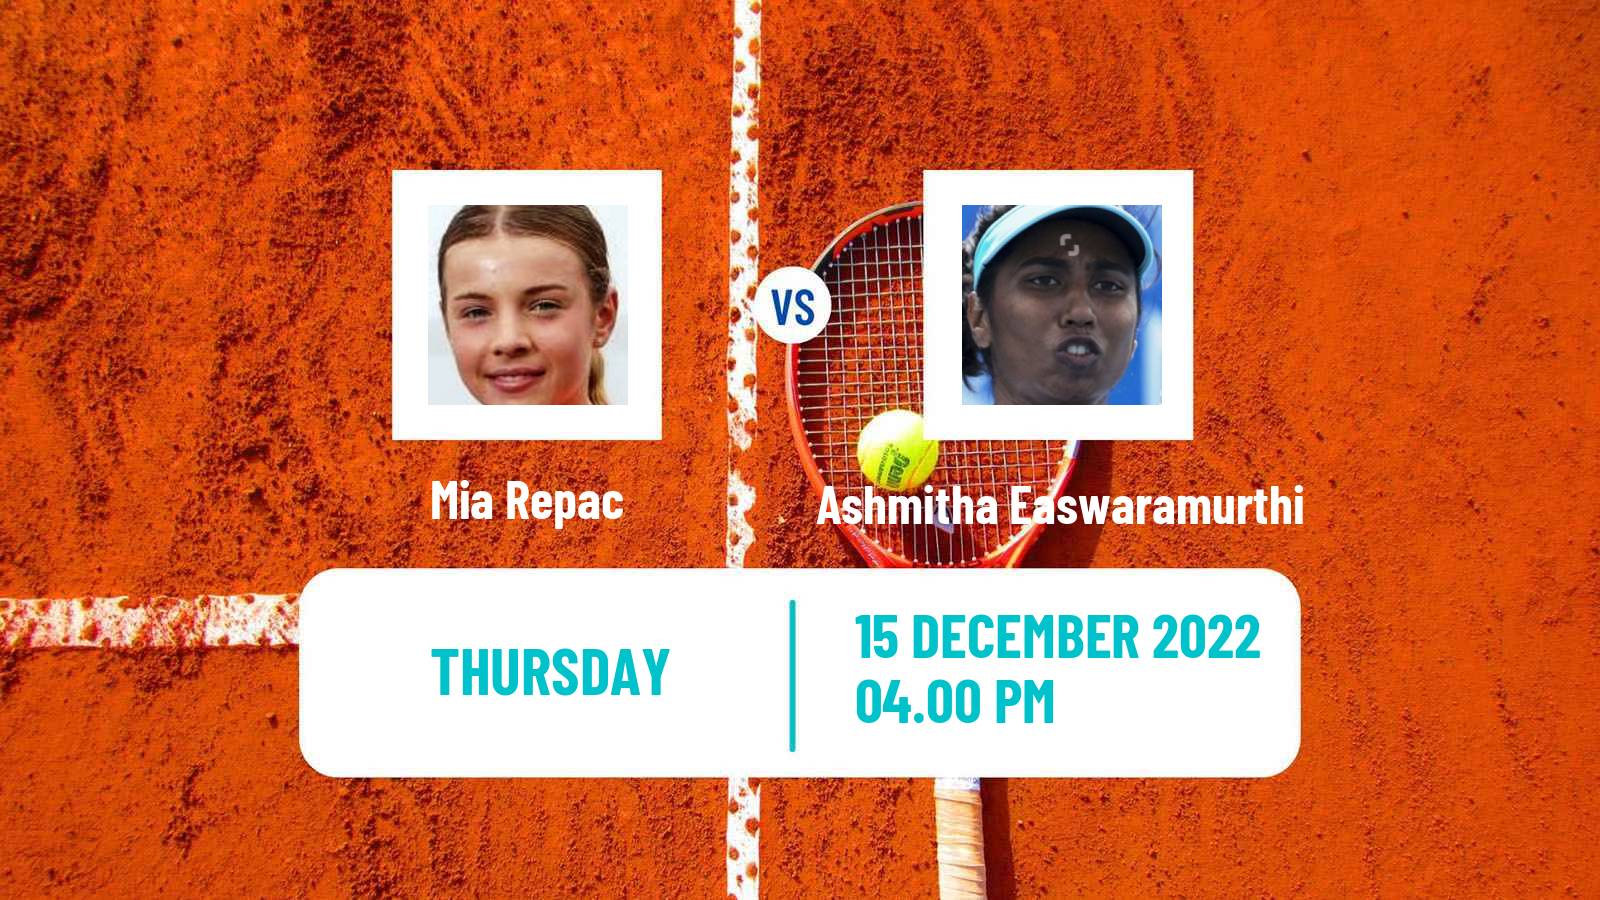 Tennis ITF Tournaments Mia Repac - Ashmitha Easwaramurthi